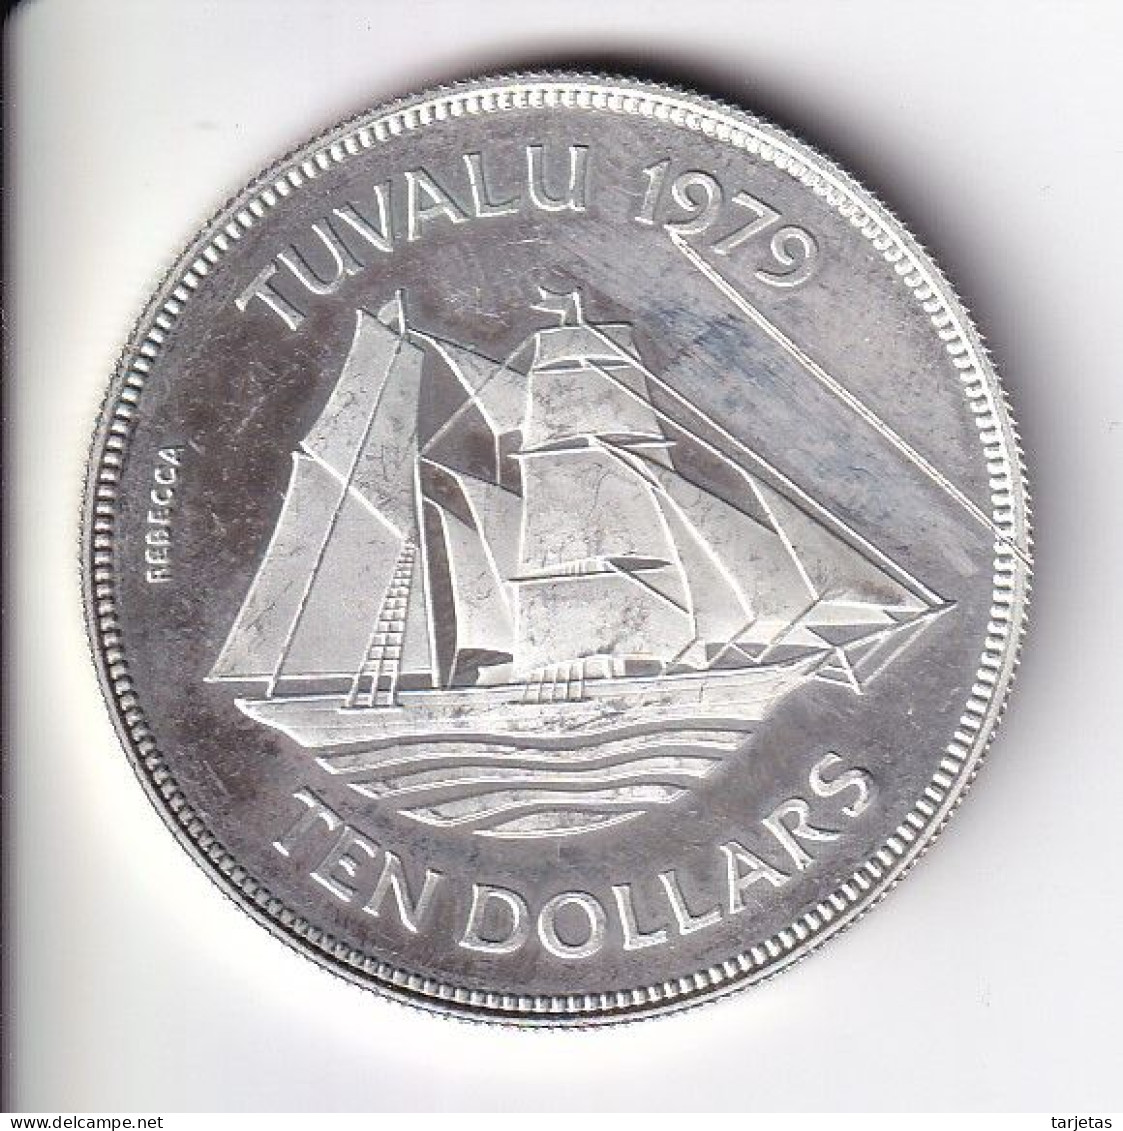 MONEDA DE PLATA DE TUVALU 10 DOLLARS DEL AÑO 1979 - BARCO-SHIP (LA DE LA FOTO) (CON RAYA DELANTE) - Tuvalu